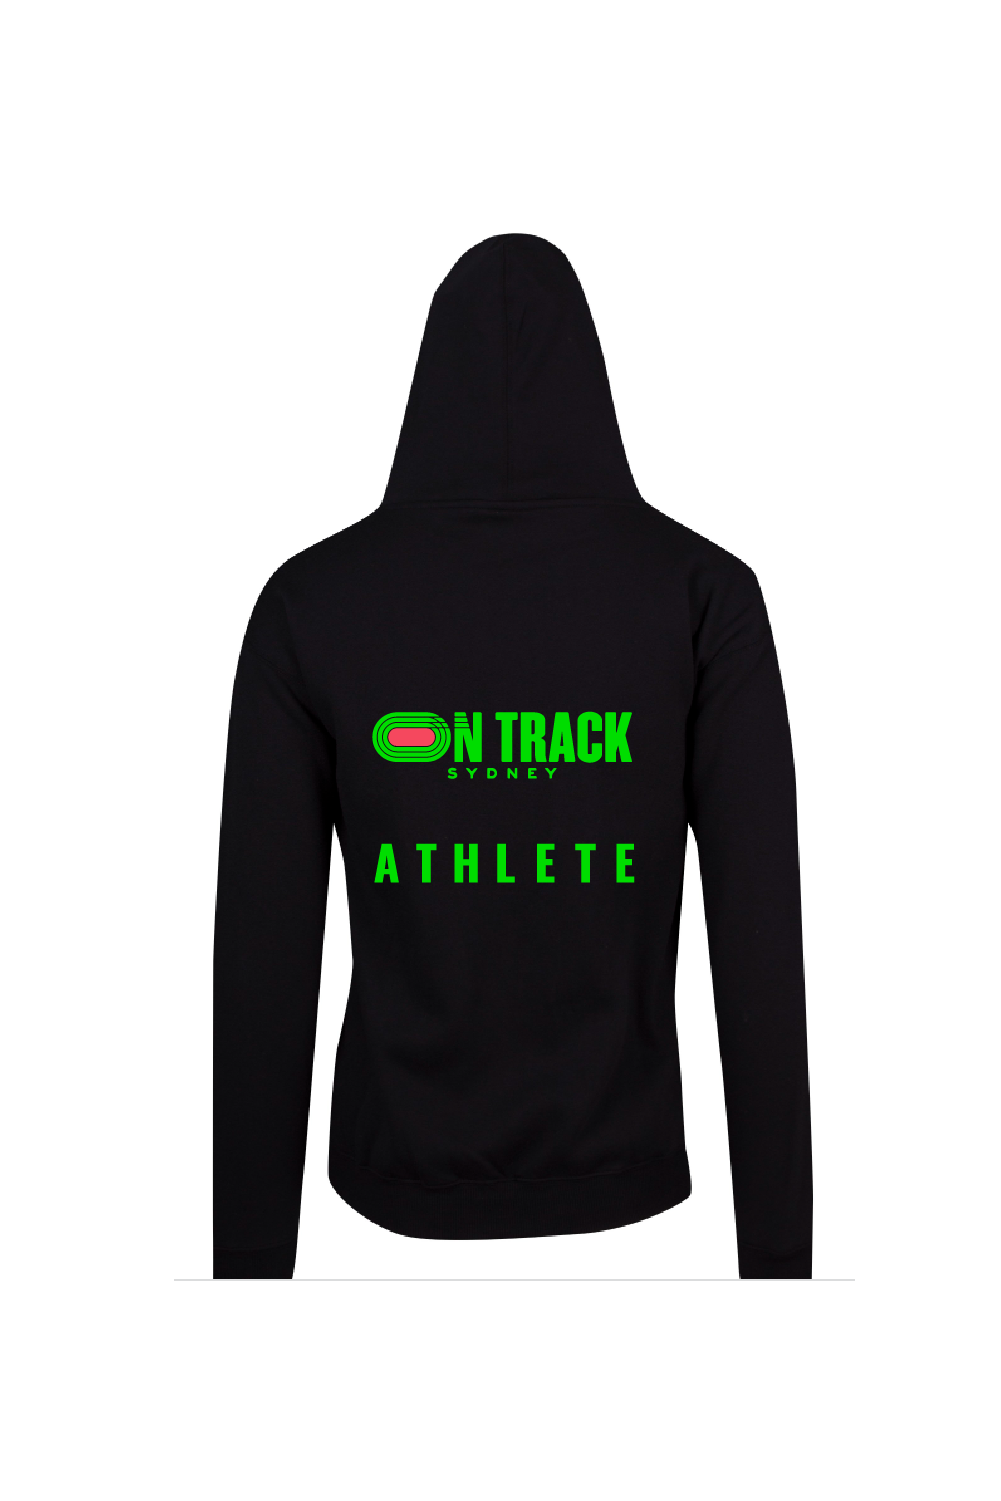 On Track Athlete Hoodies